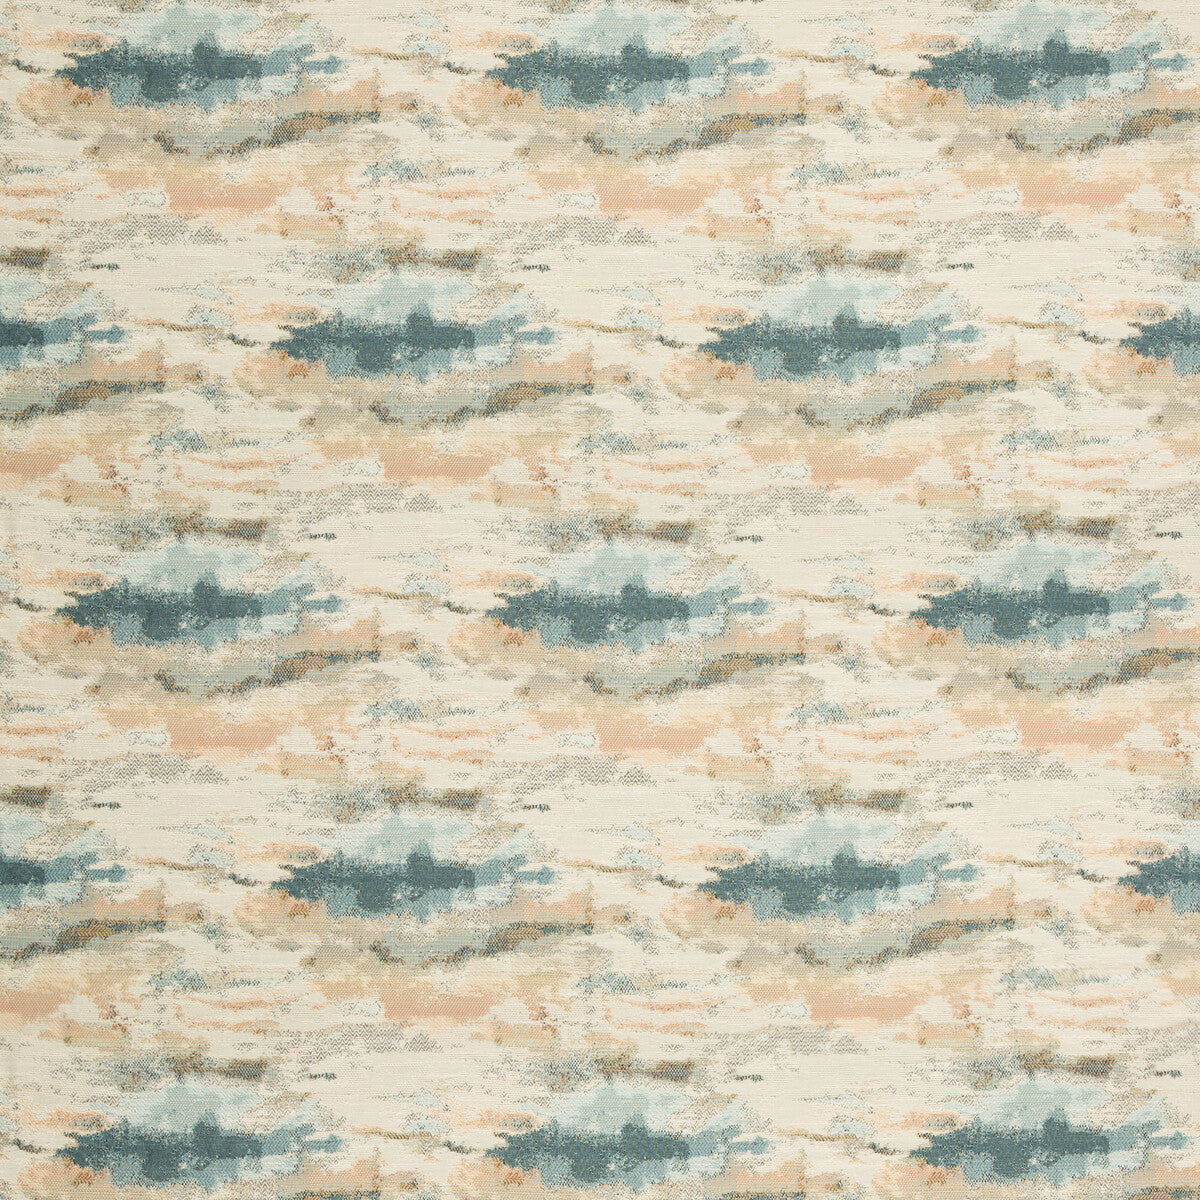 Kravet Design fabric in 35388-512 color - pattern 35388.512.0 - by Kravet Design